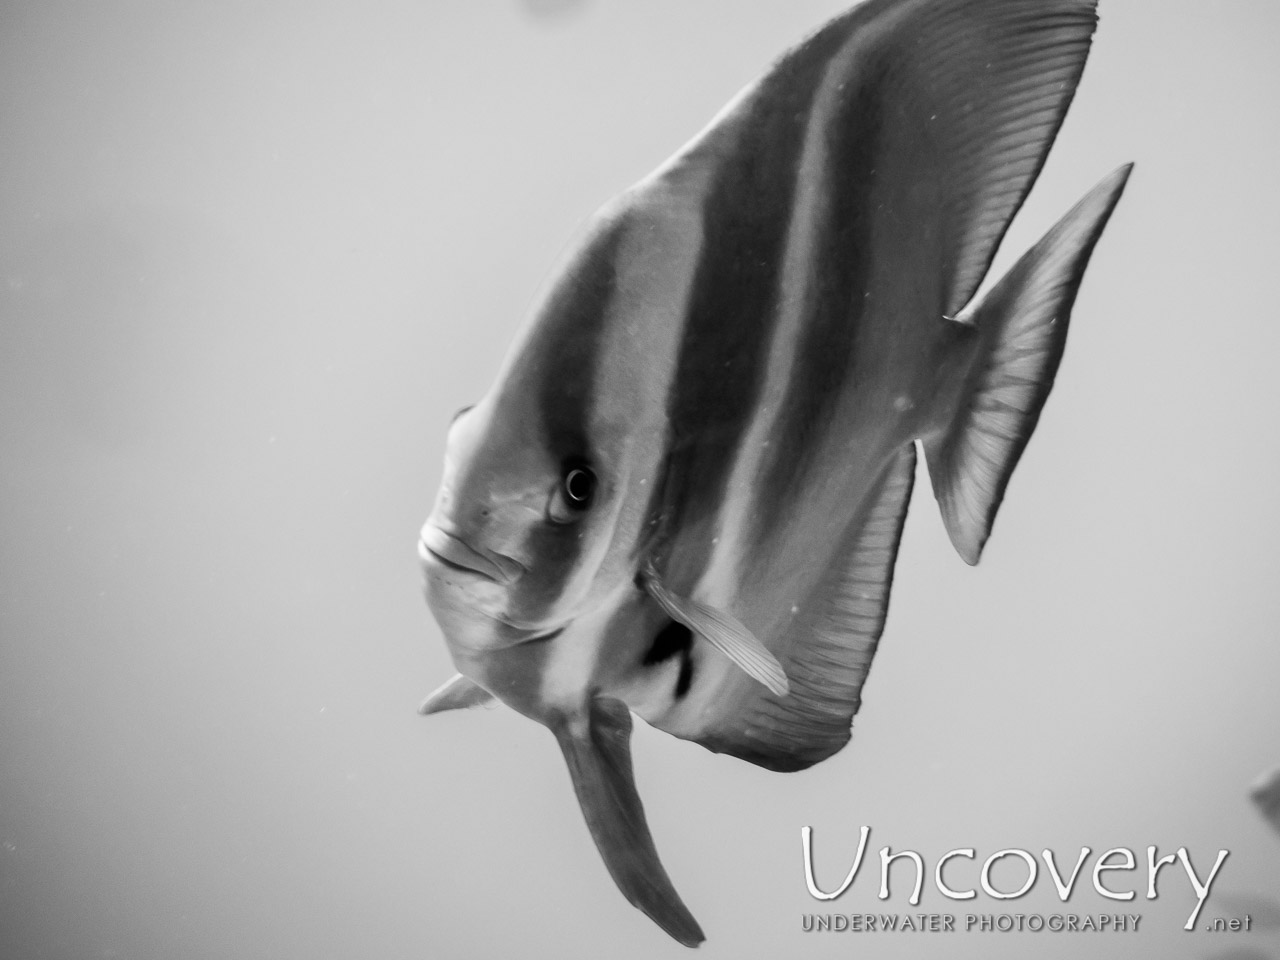 Longfin Batfish (platax Teira) shot in Maldives|Male Atoll|South Male Atoll|Gulhi Corner